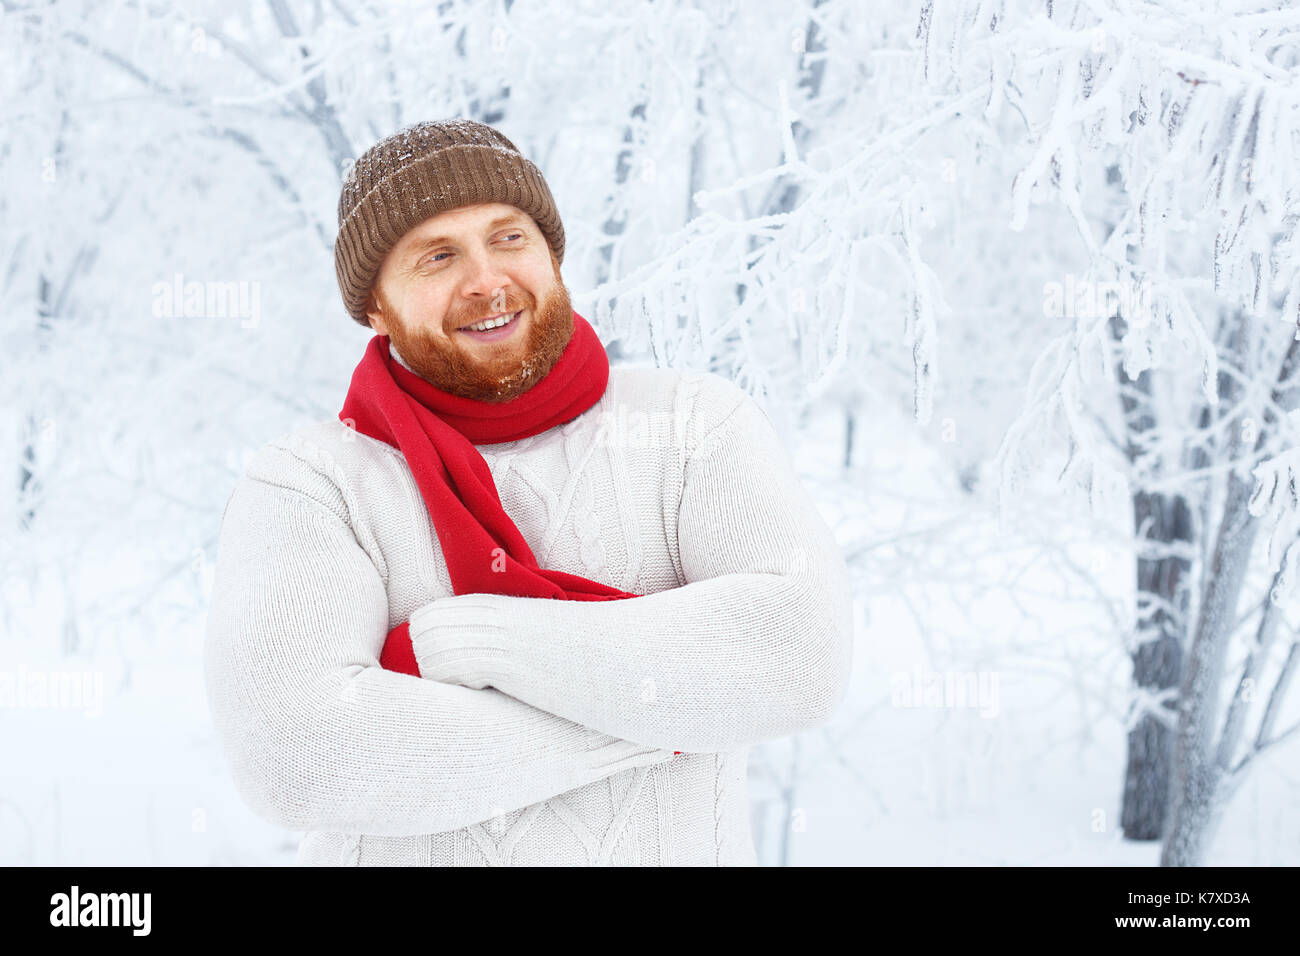 Junge rothaarige Mann mit Bart in Mütze und Schal im Winter Wald. Portrait von glücklichen Menschen mit stilvollen roten Bart und Schnurrbart in Winter Park Hintergrund. P Stockfoto